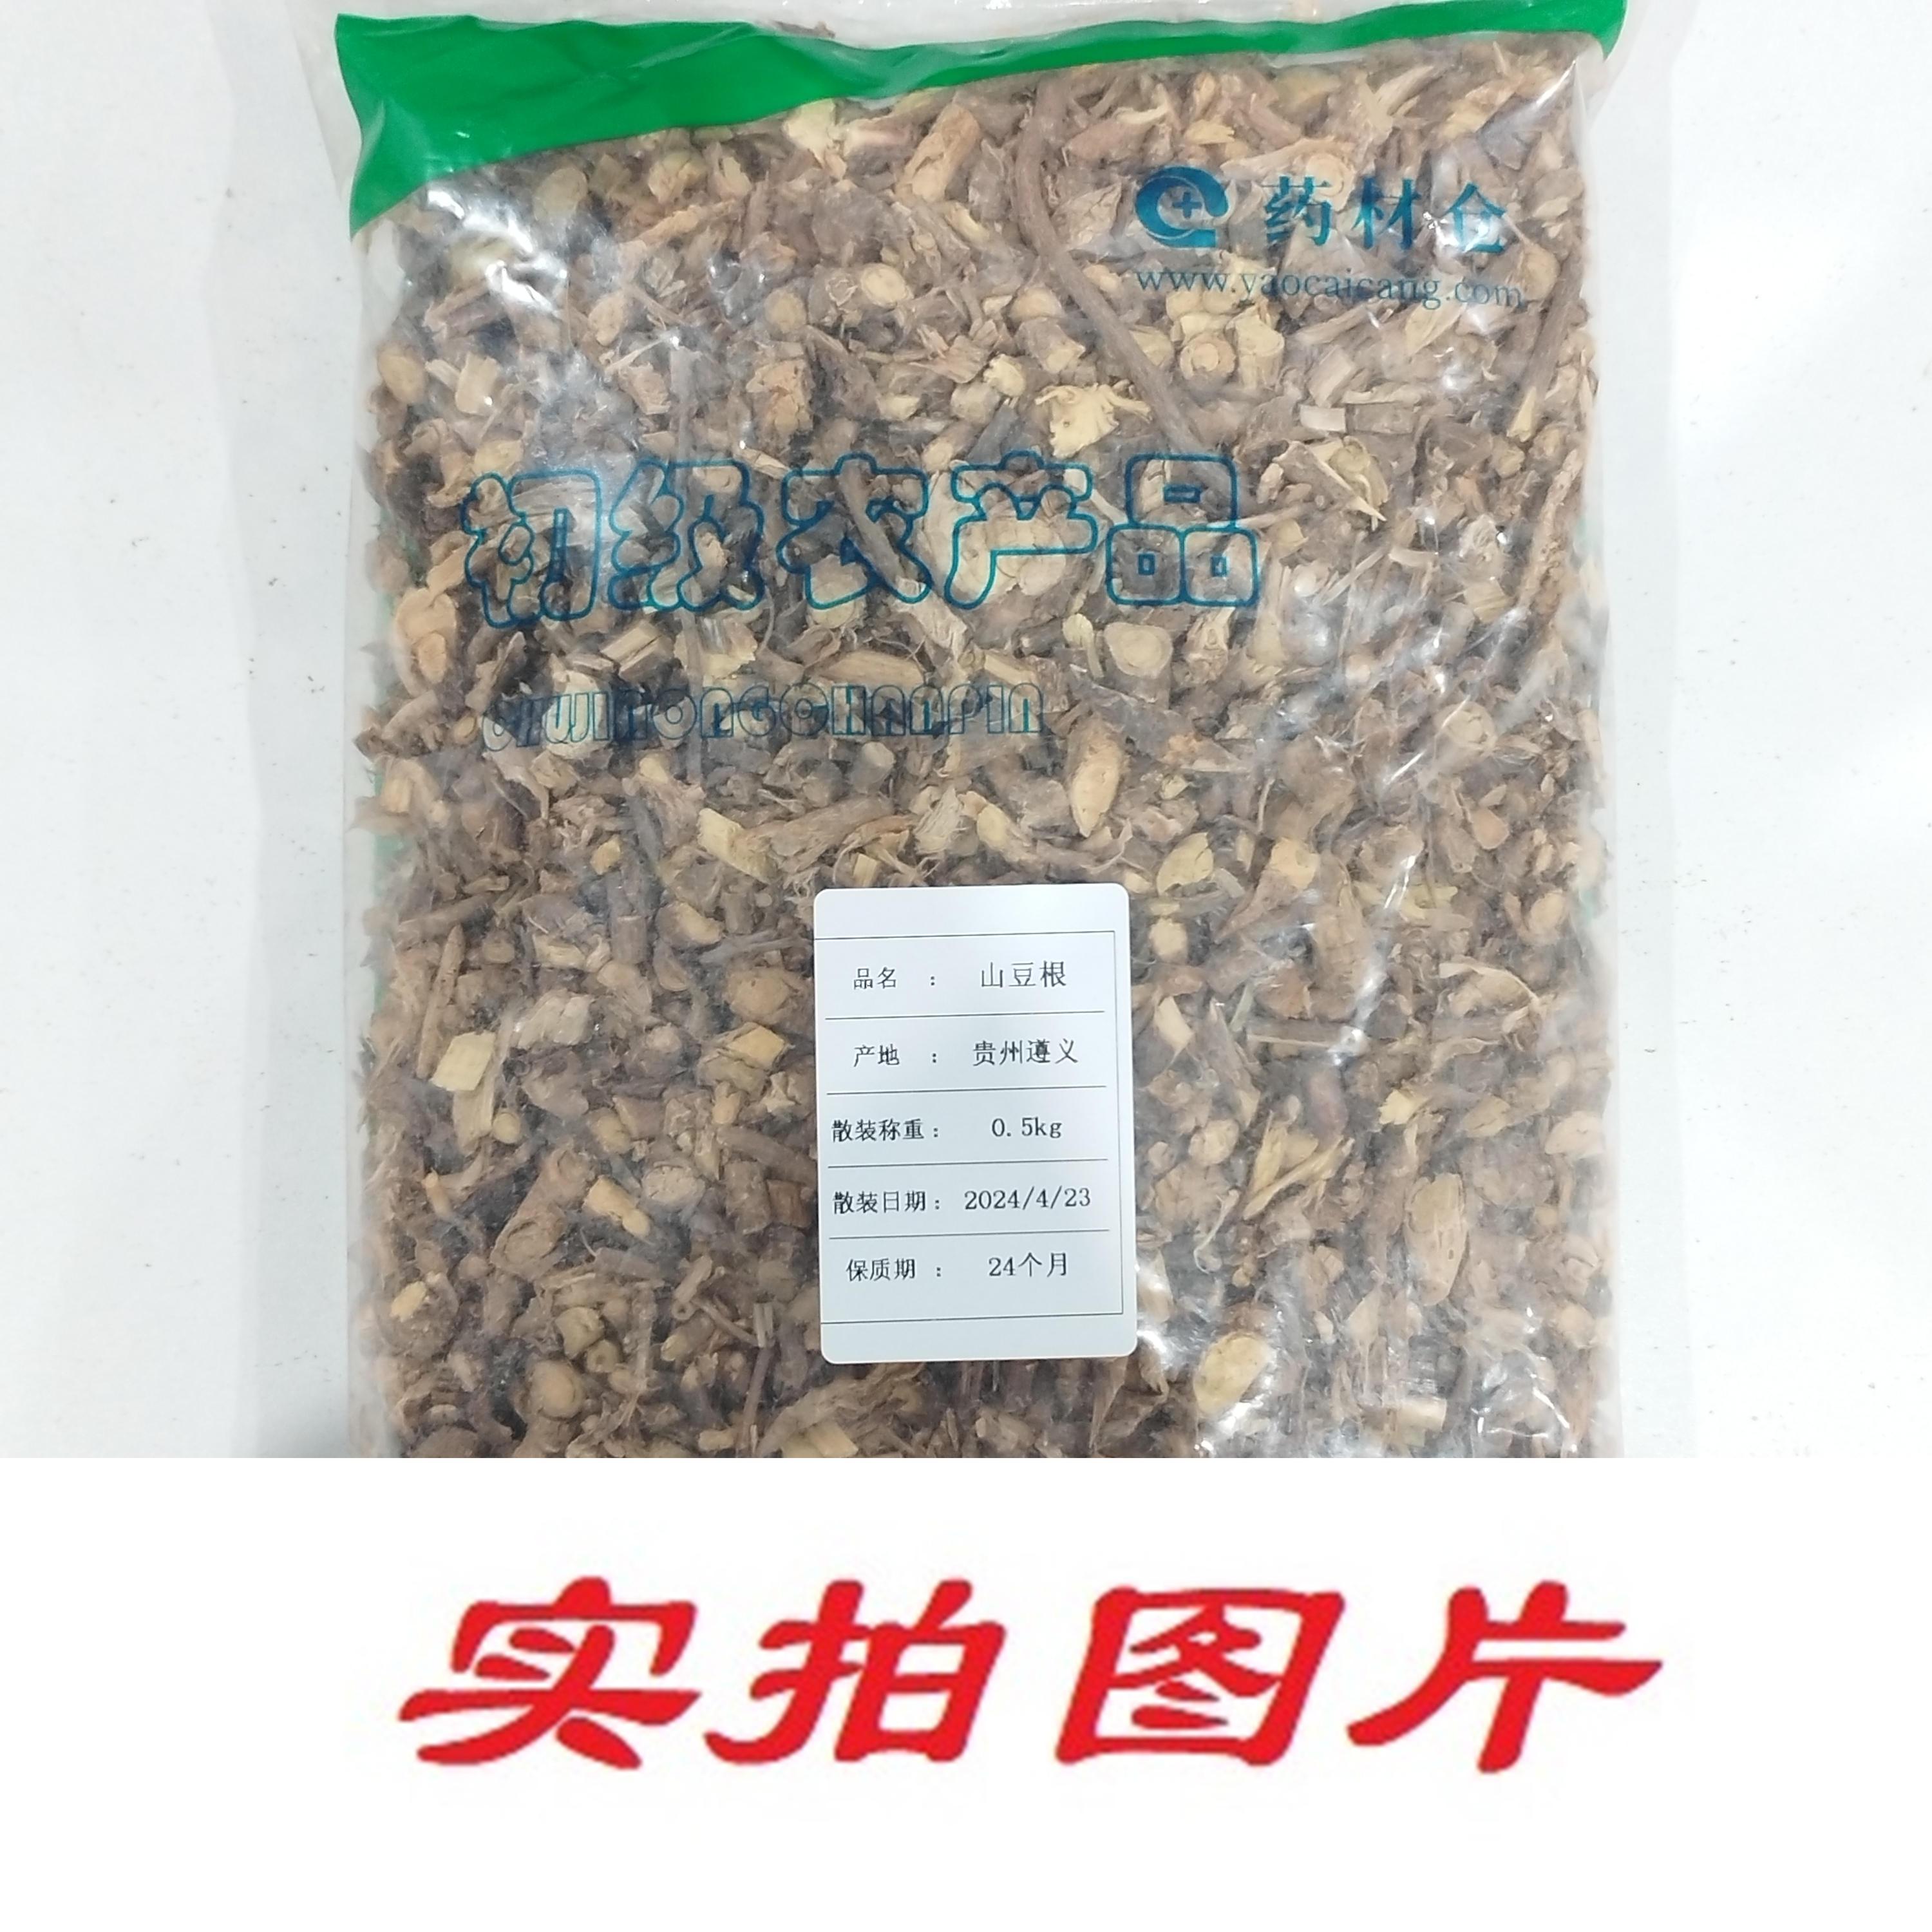 【】山豆根0.5kg-农副产品